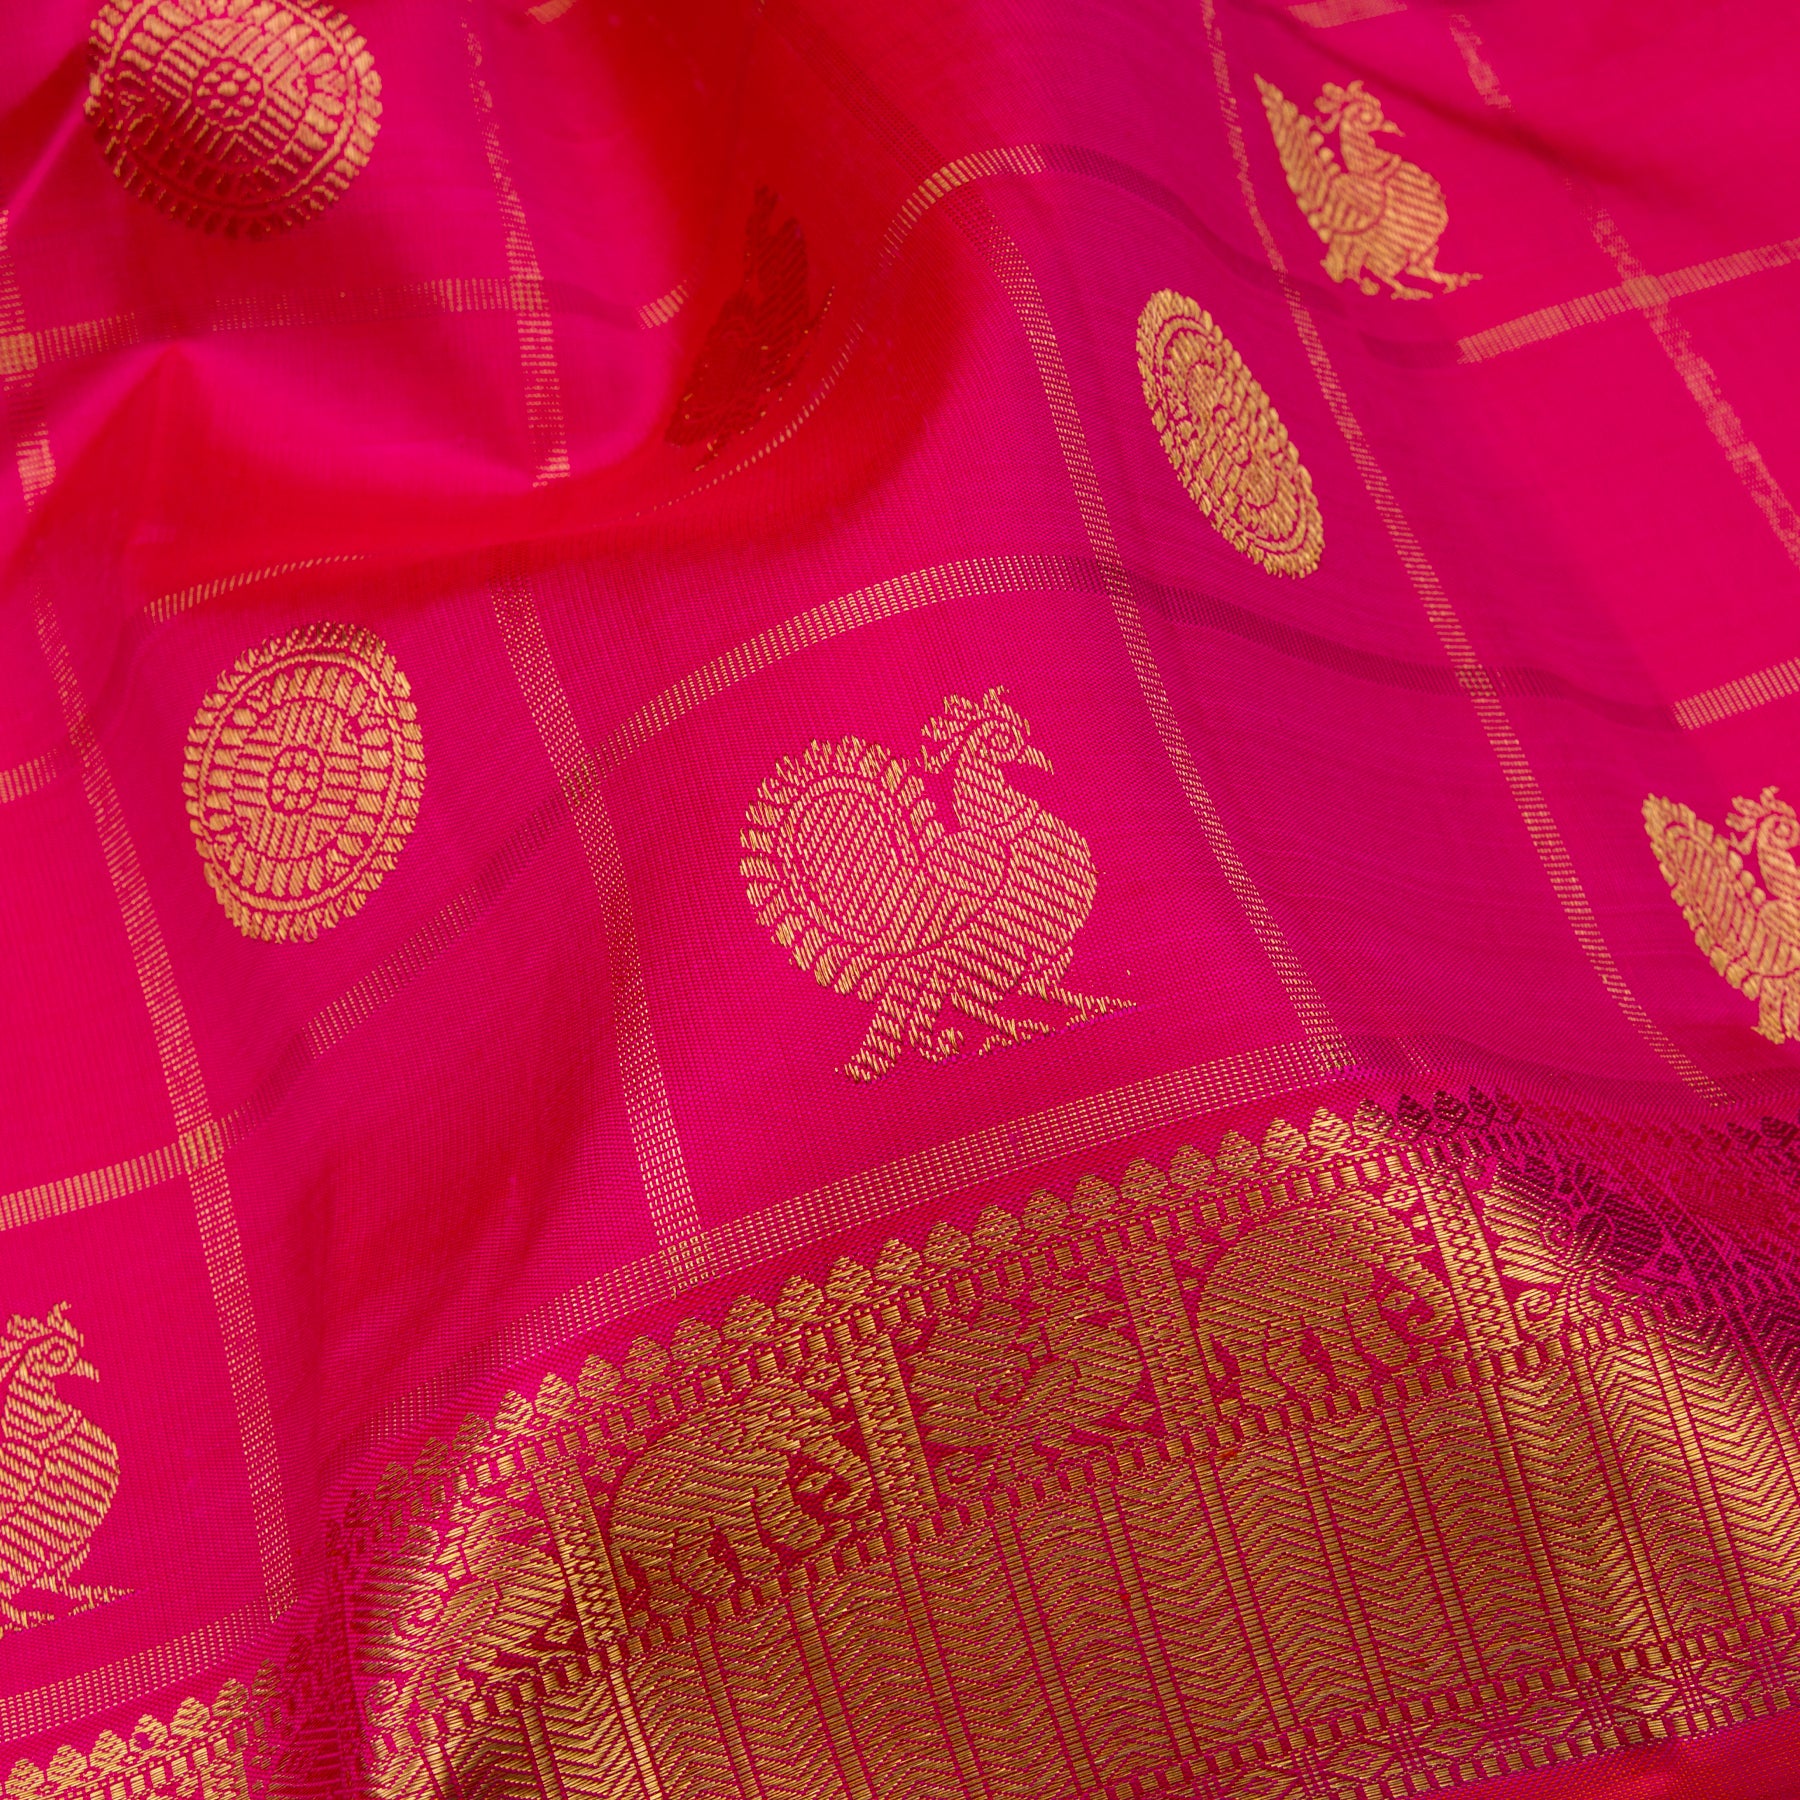 Kanakavalli Kanjivaram Silk Sari 23-110-HS001-10356 - Fabric View